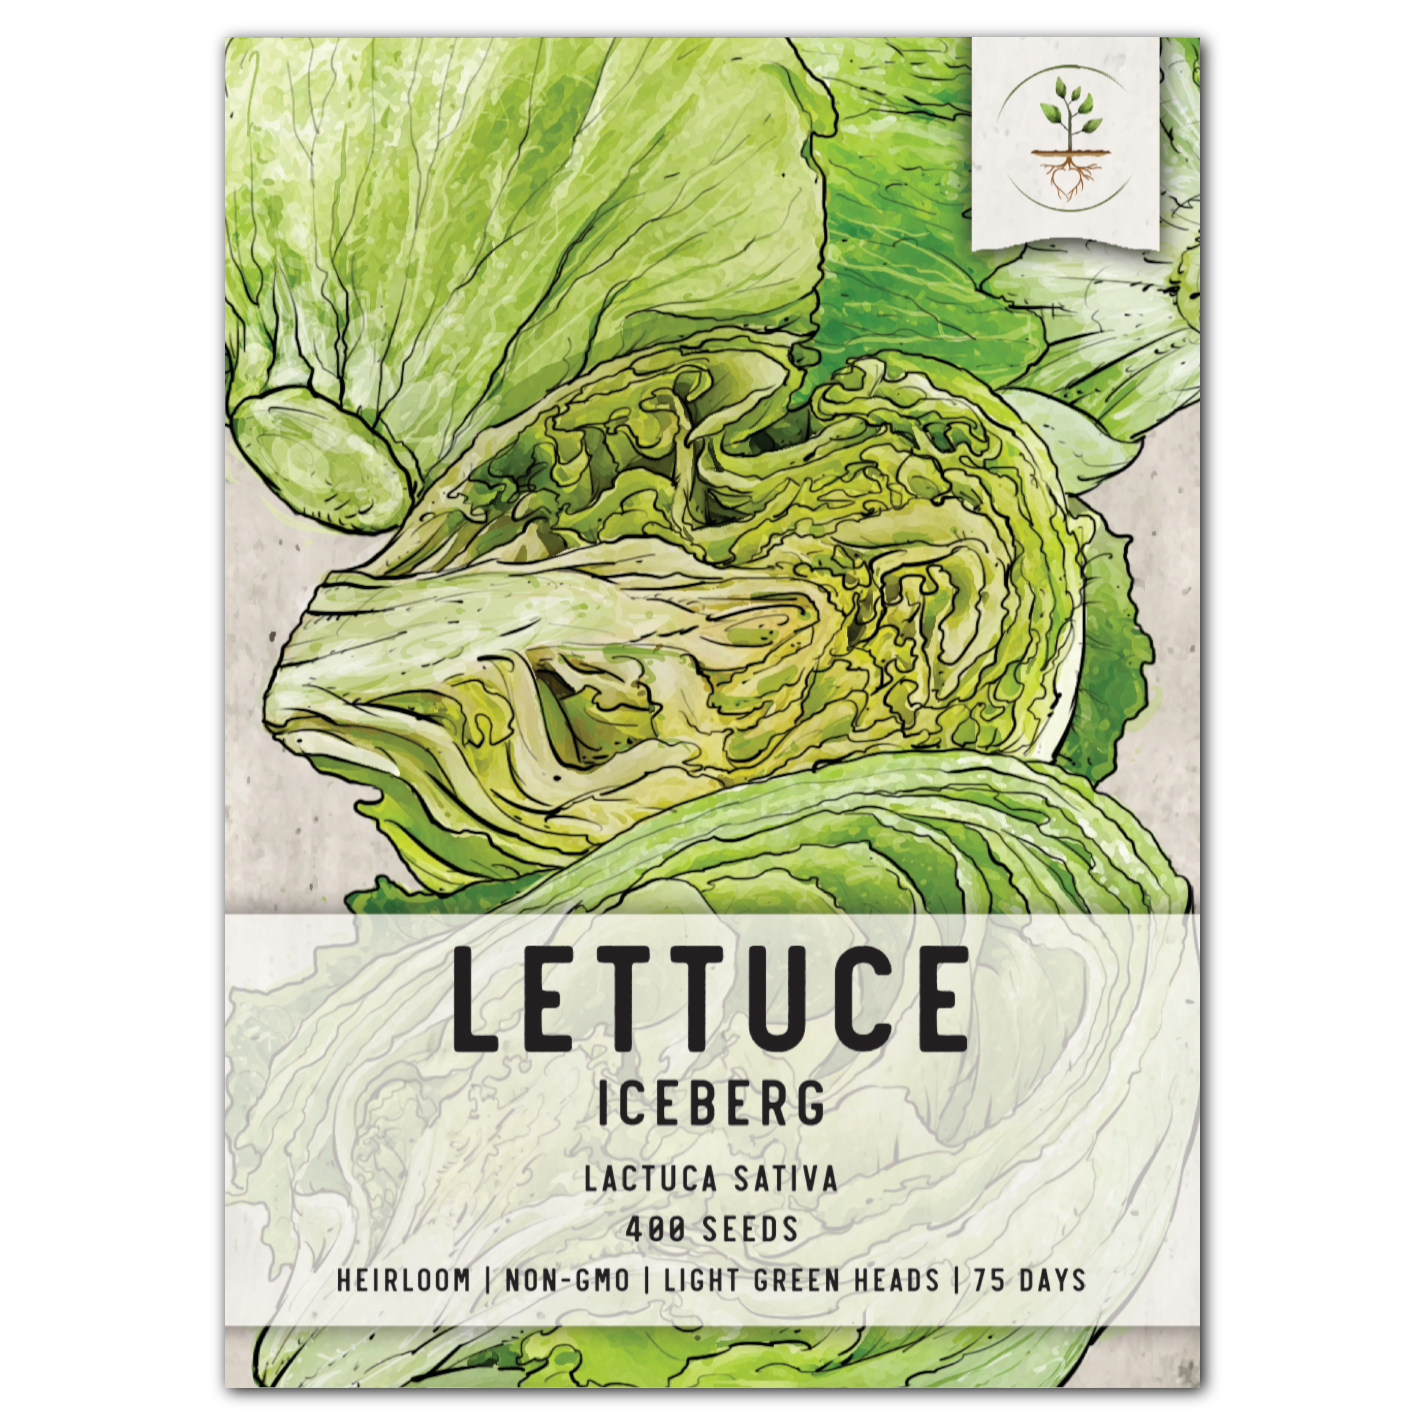 iceberg lettuce seeds for planting